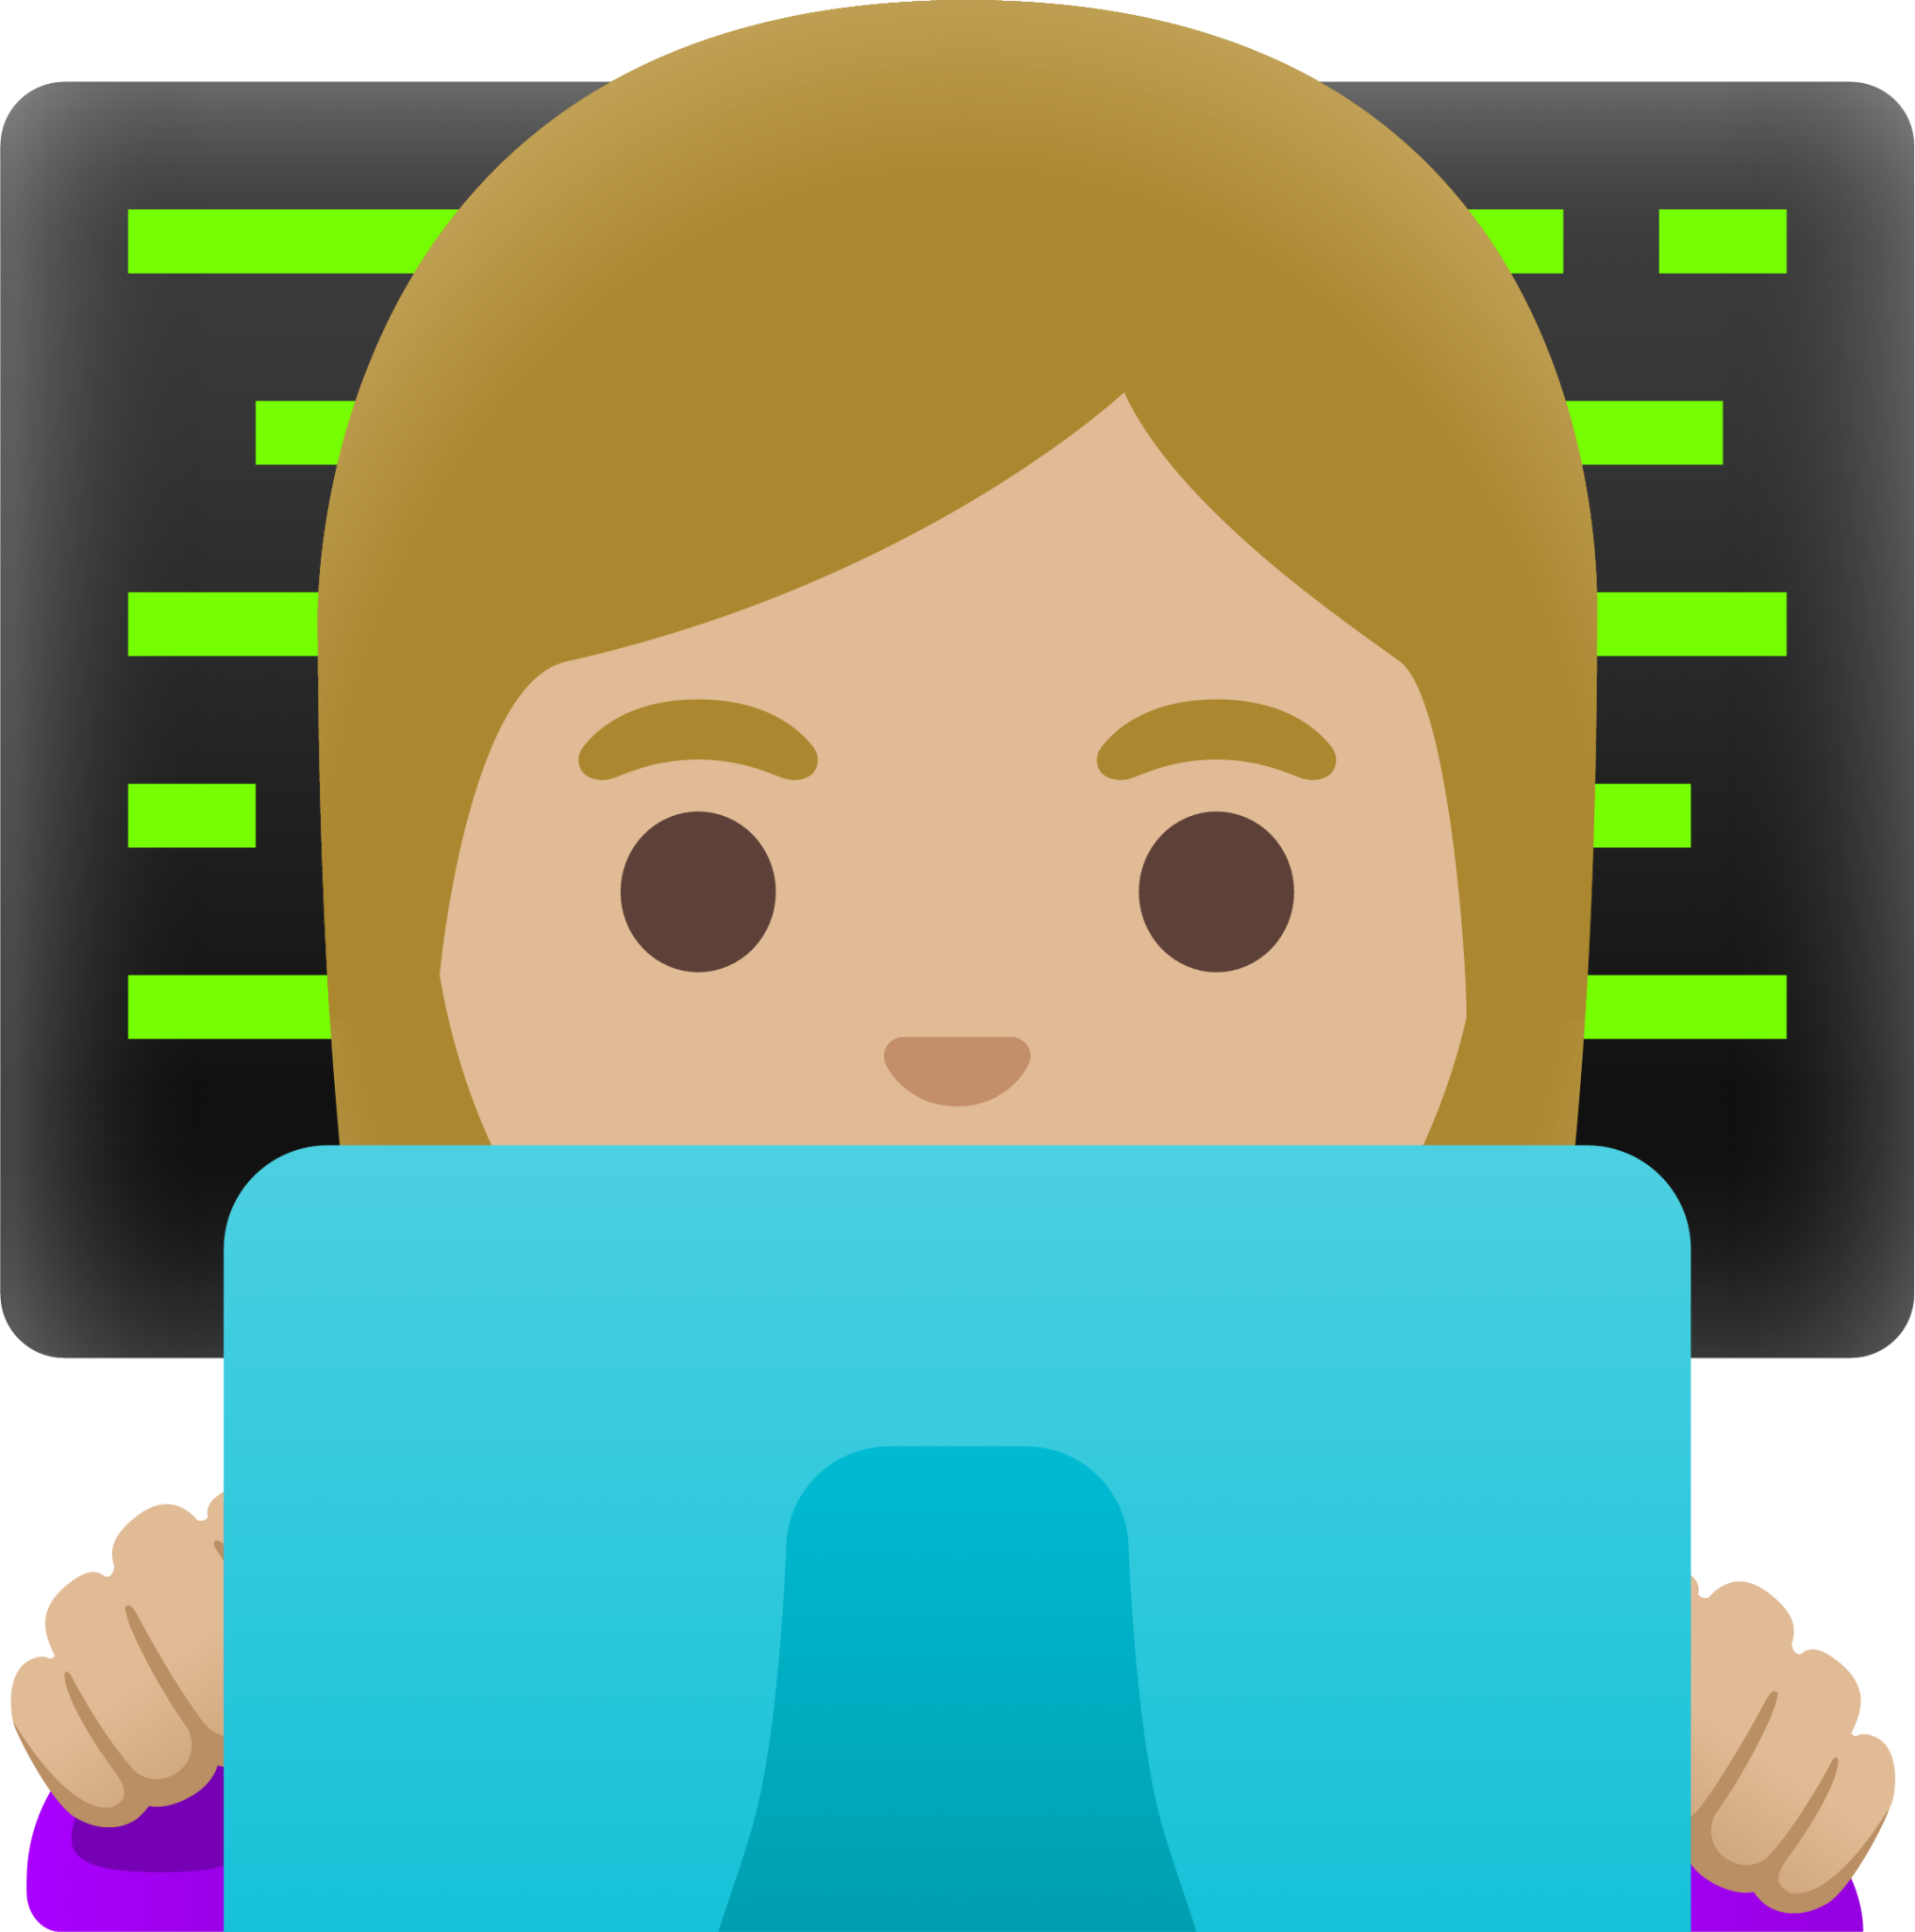 woman technologist: medium-light skin tone emoji